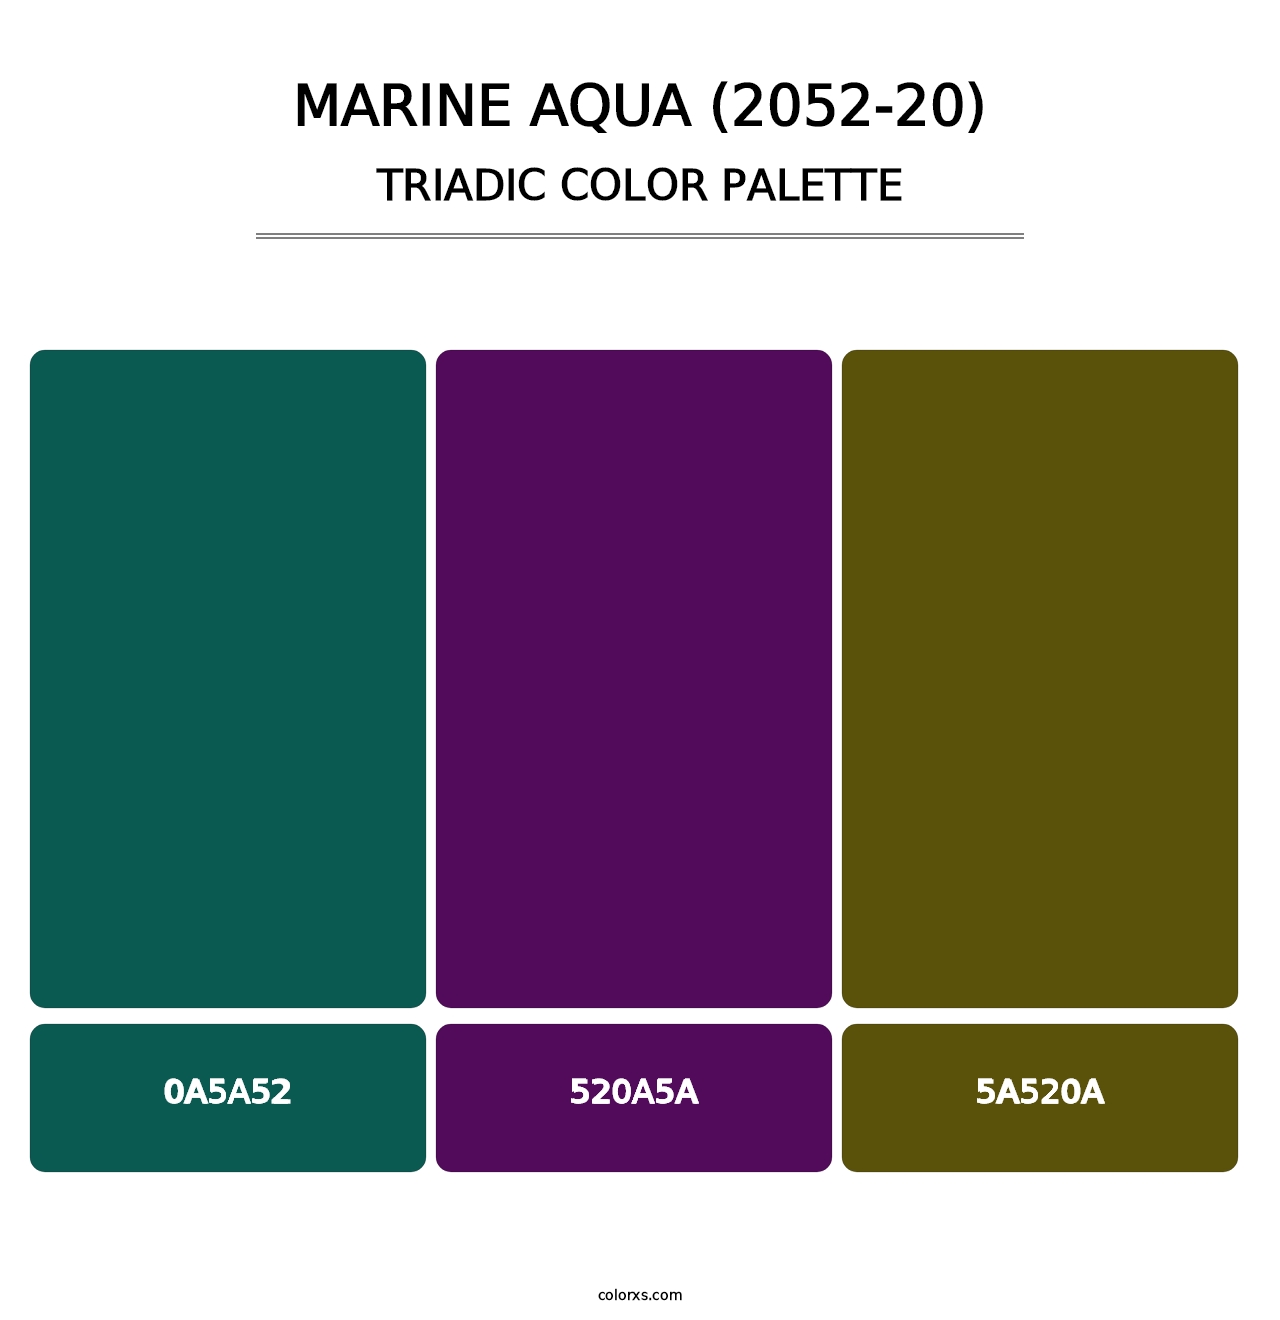 Marine Aqua (2052-20) - Triadic Color Palette